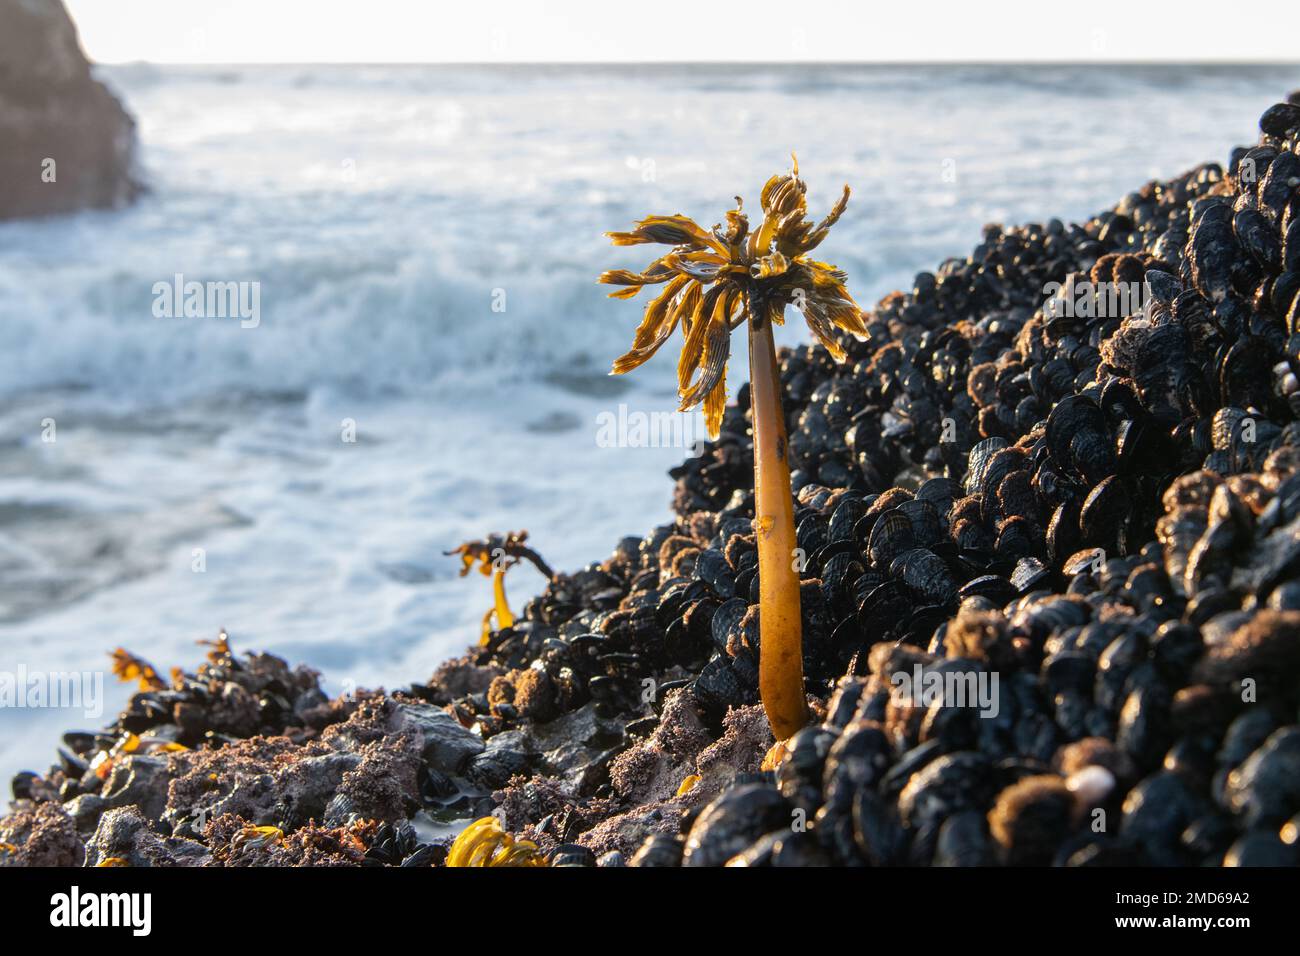 Seetang aus der Meerespalme (Postelsia palmaeformis) an der felsigen Küste des pazifiks in Kalifornien, USA, wächst eine Form von Seetang. Stockfoto